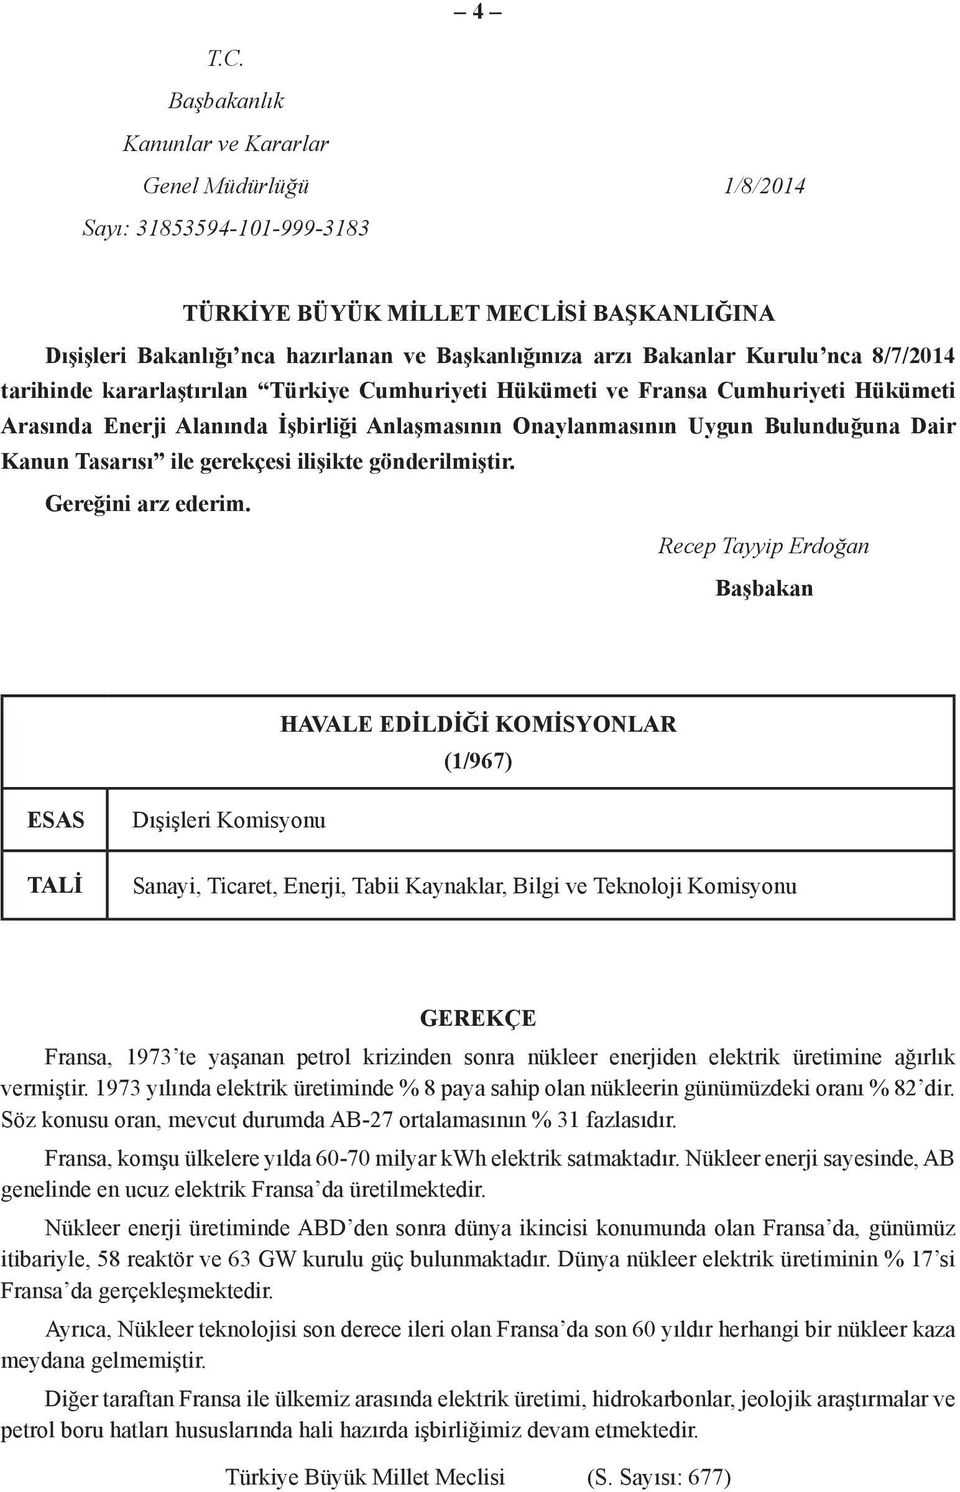 Kurulu nca 8/7/2014 tarihinde kararlaştırılan Türkiye Cumhuriyeti Hükümeti ve Fransa Cumhuriyeti Hükümeti Arasında Enerji Alanında İşbirliği Anlaşmasının Onaylanmasının Uygun Bulunduğuna Dair Kanun